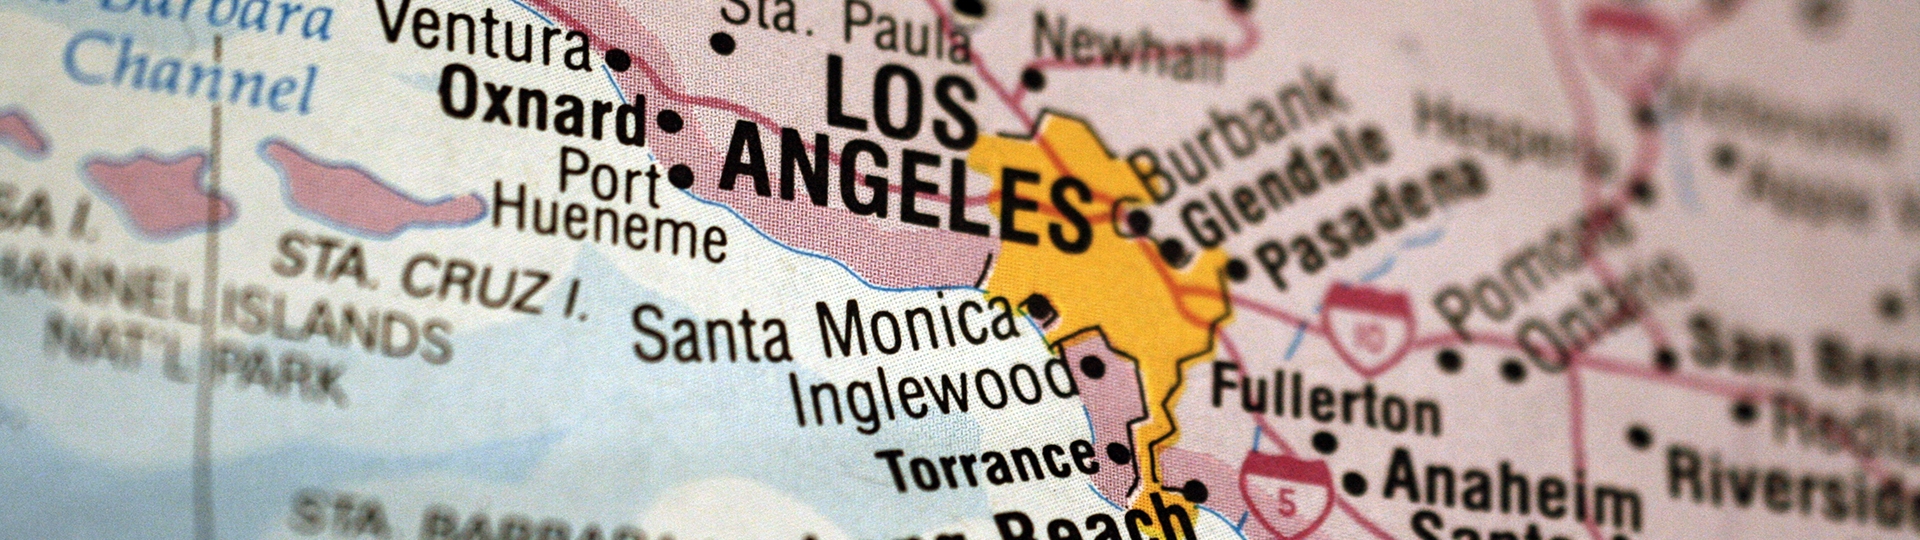 Biểu ngữ có hình bản đồ cận cảnh của Quận Los Angeles làm nổi bật Los Angeles và các đô thị lân cận.